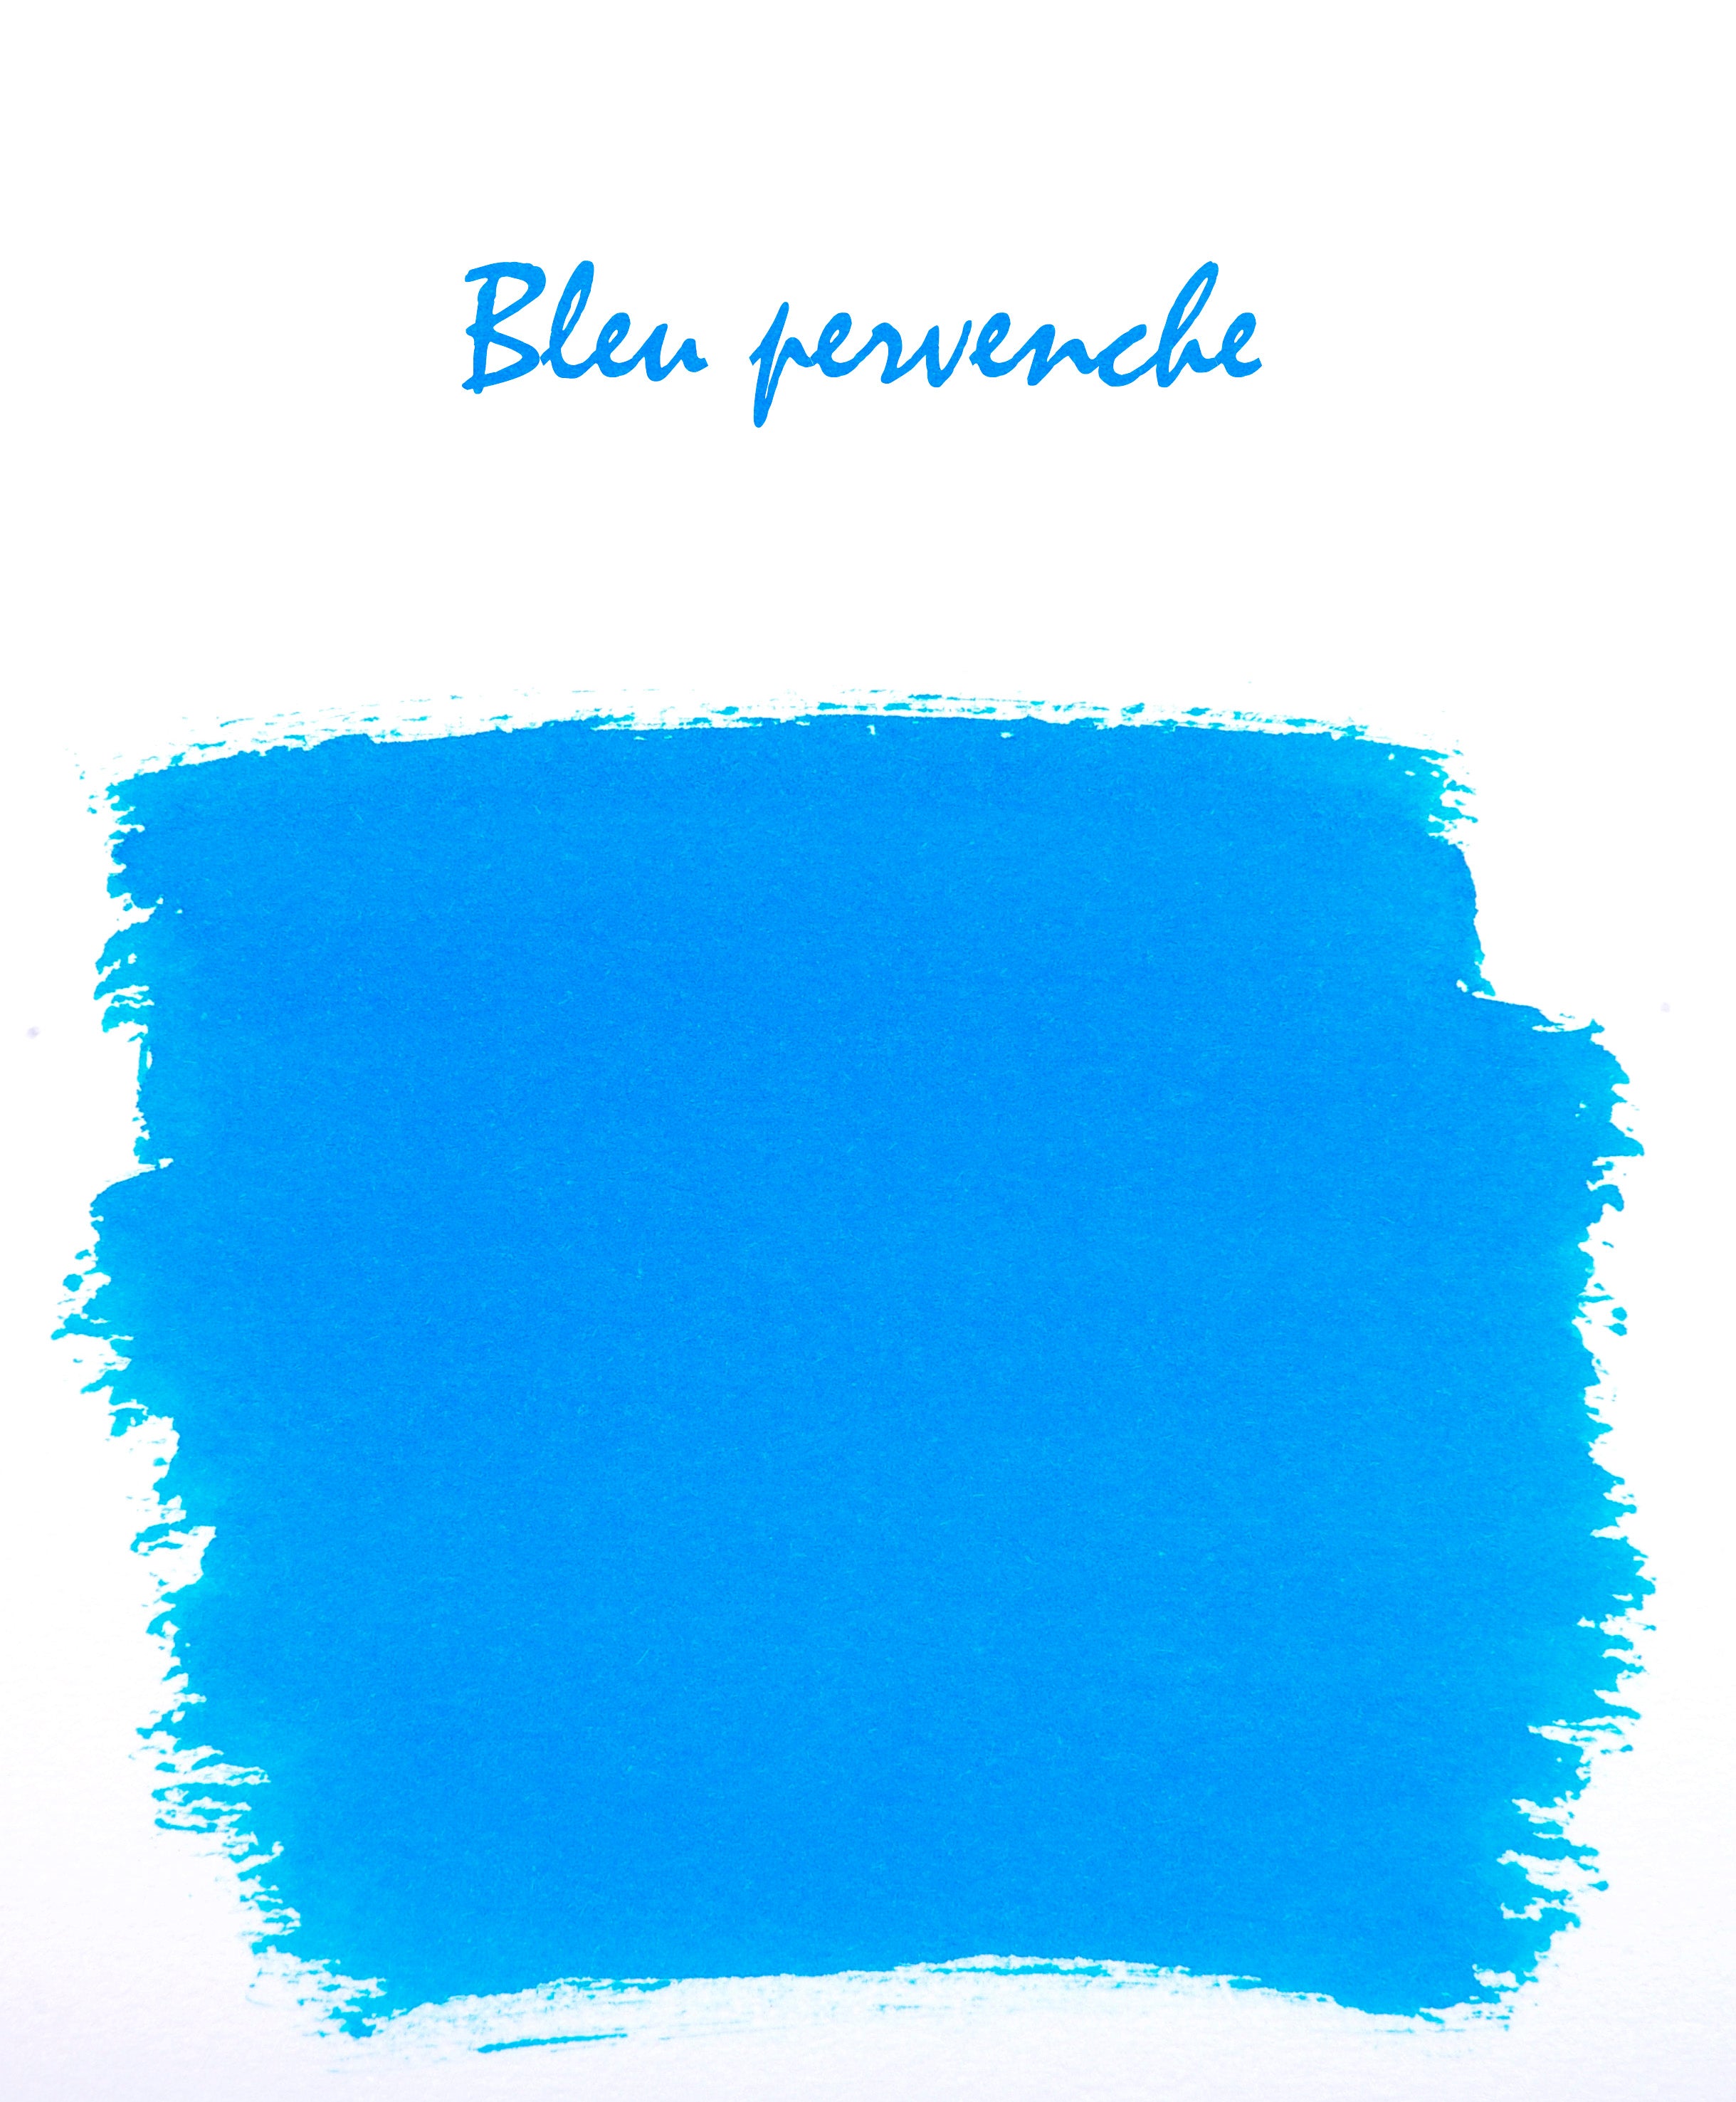 Herbin ink bottle light blue 10 ml / bleu pervenche